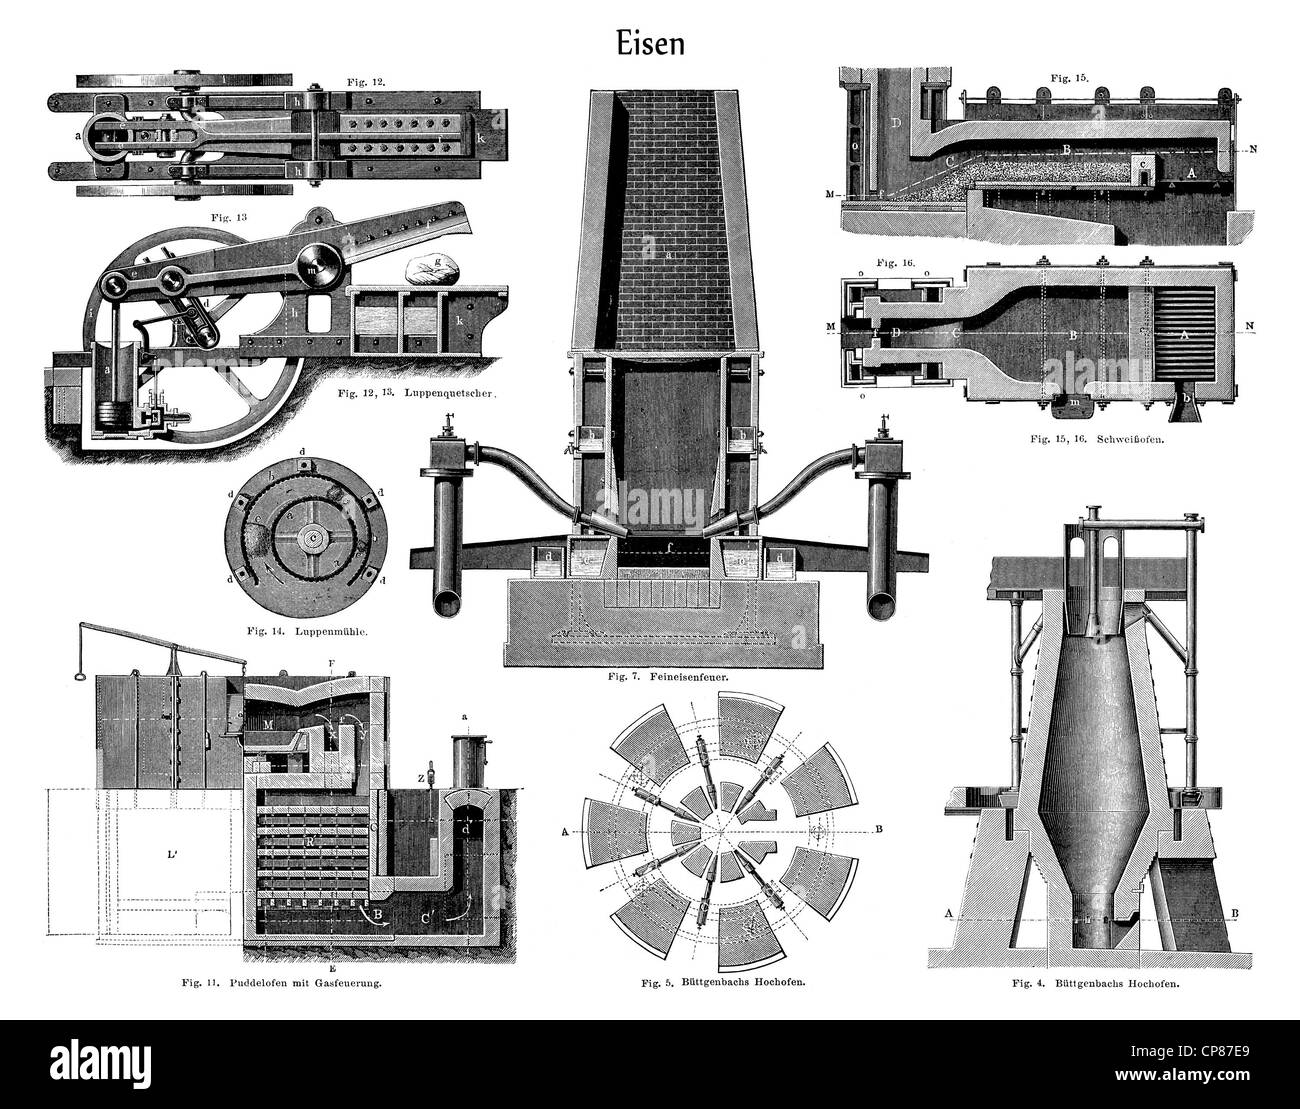 Graphic depiction, technical processing of iron in different blast furnaces, Zeichnerische Darstellung, technische Eisenverarbei Stock Photo